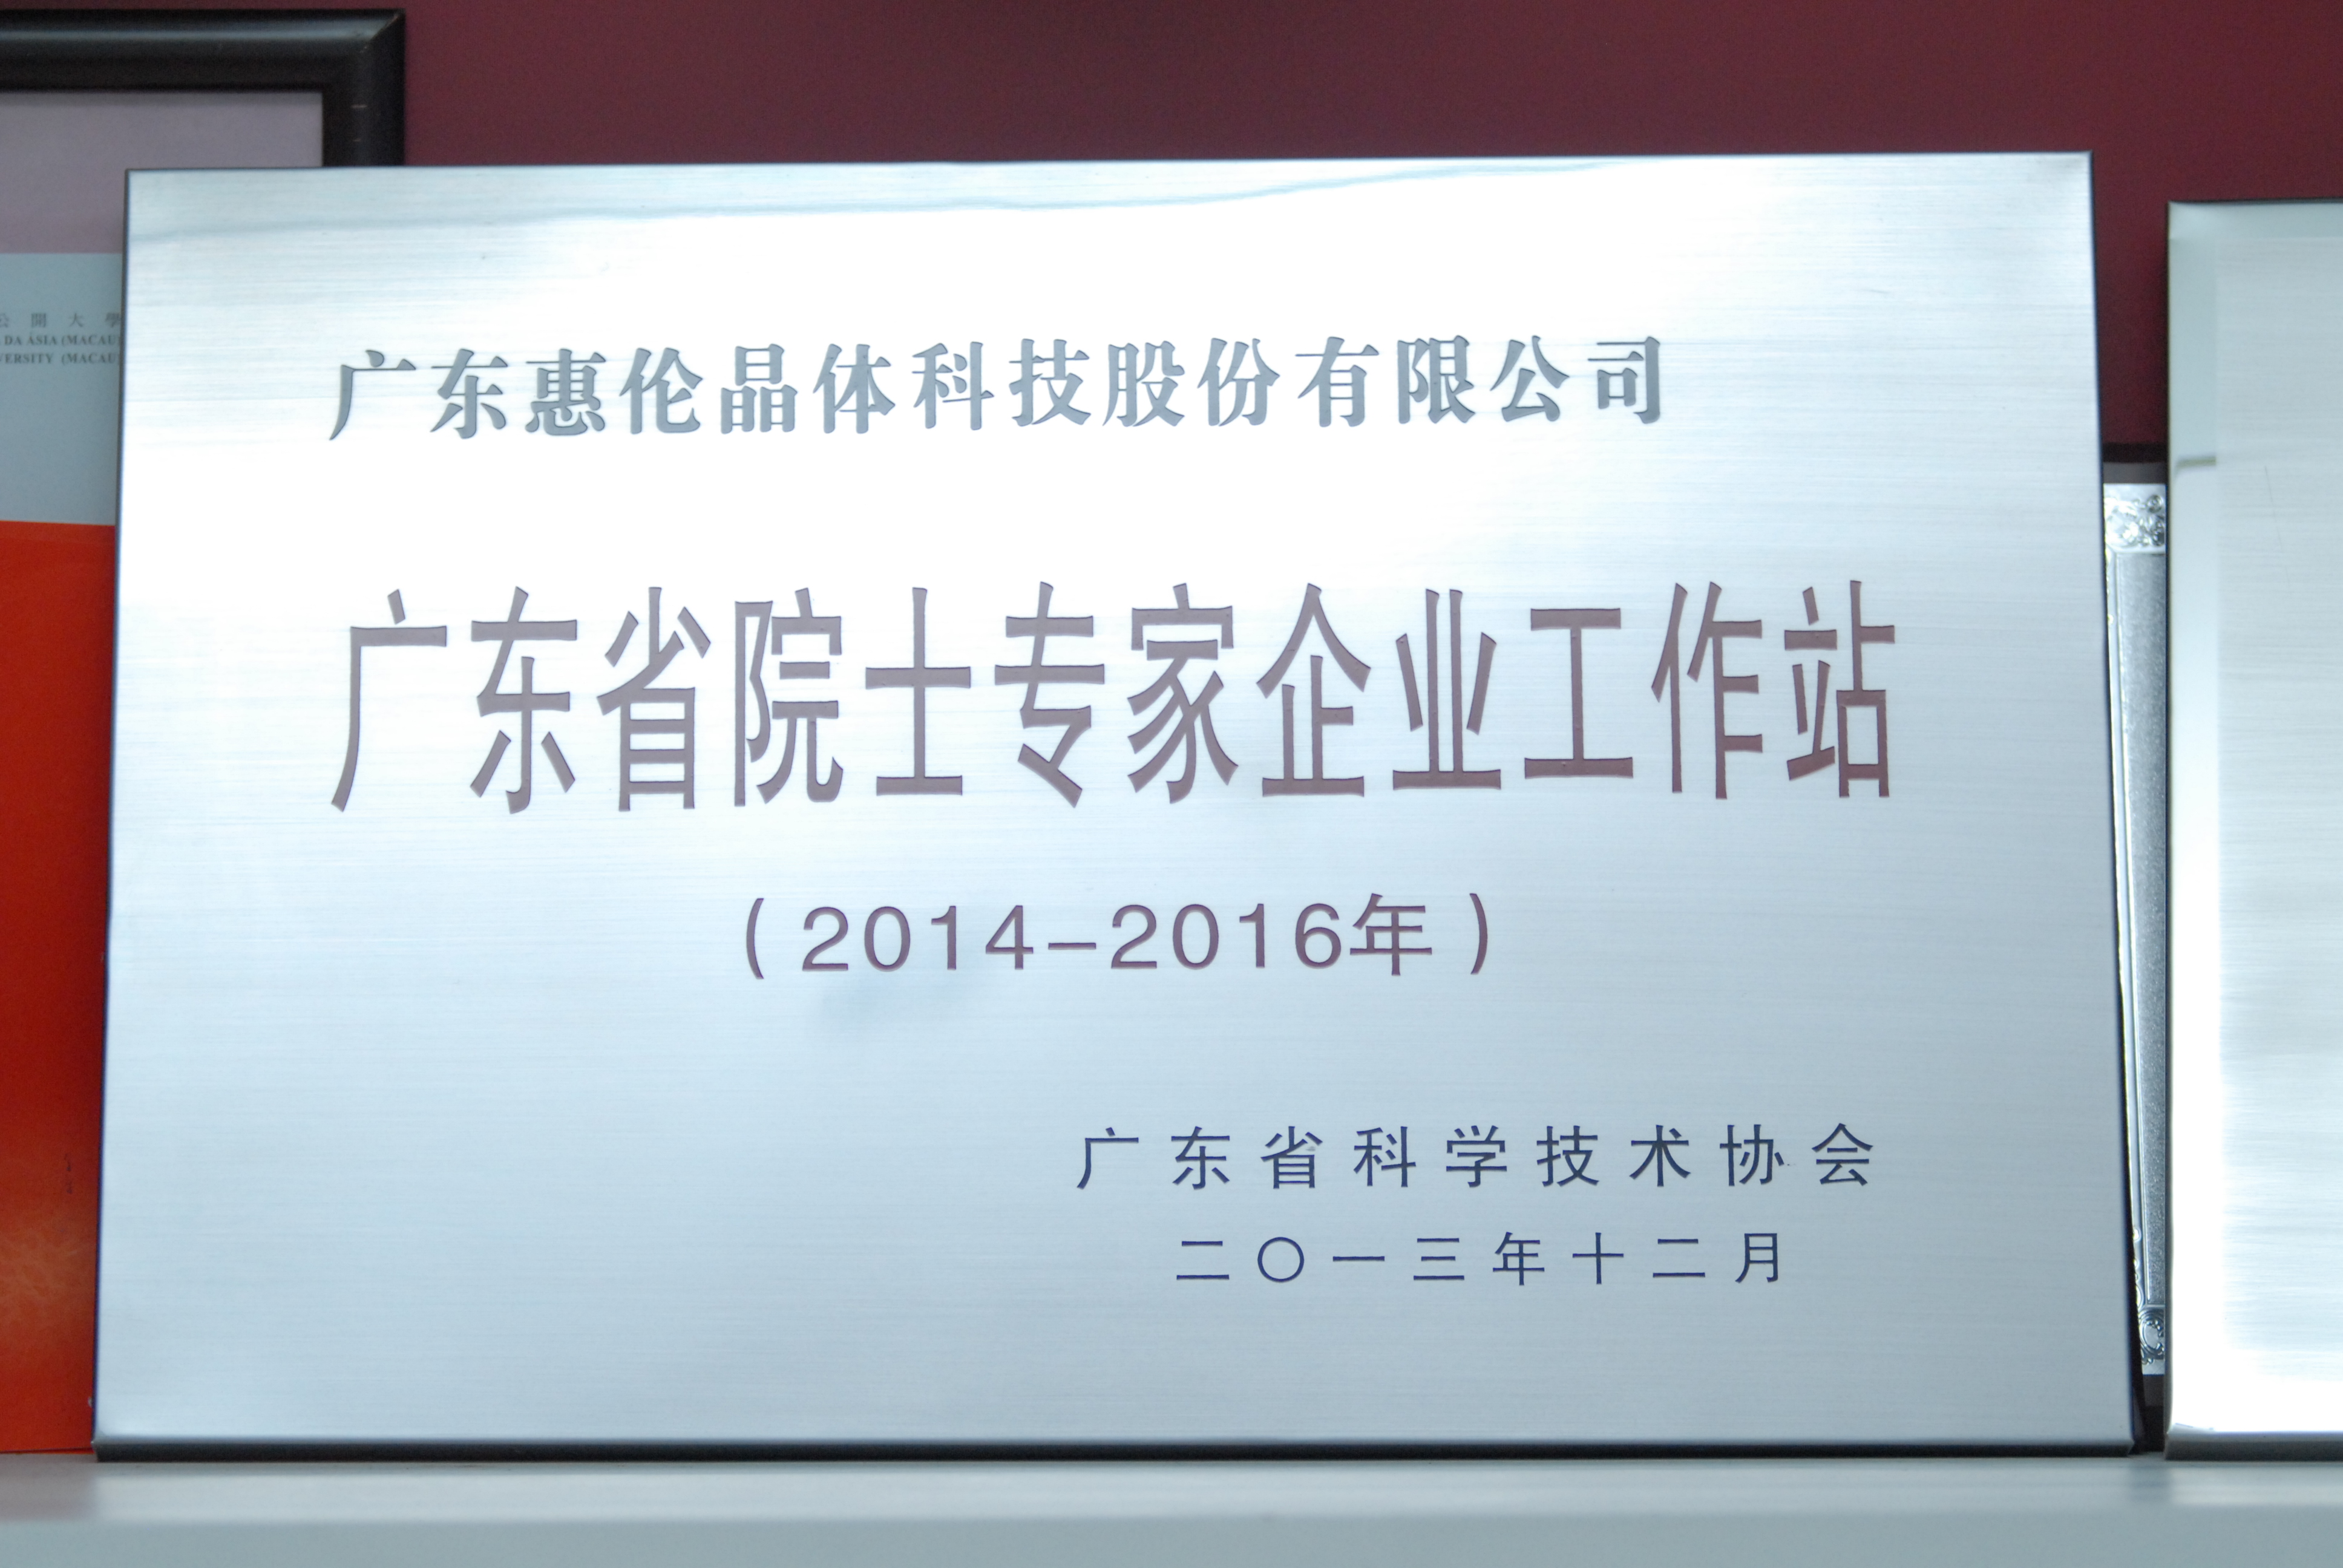 2014年 廣東省院士專家企業工作站